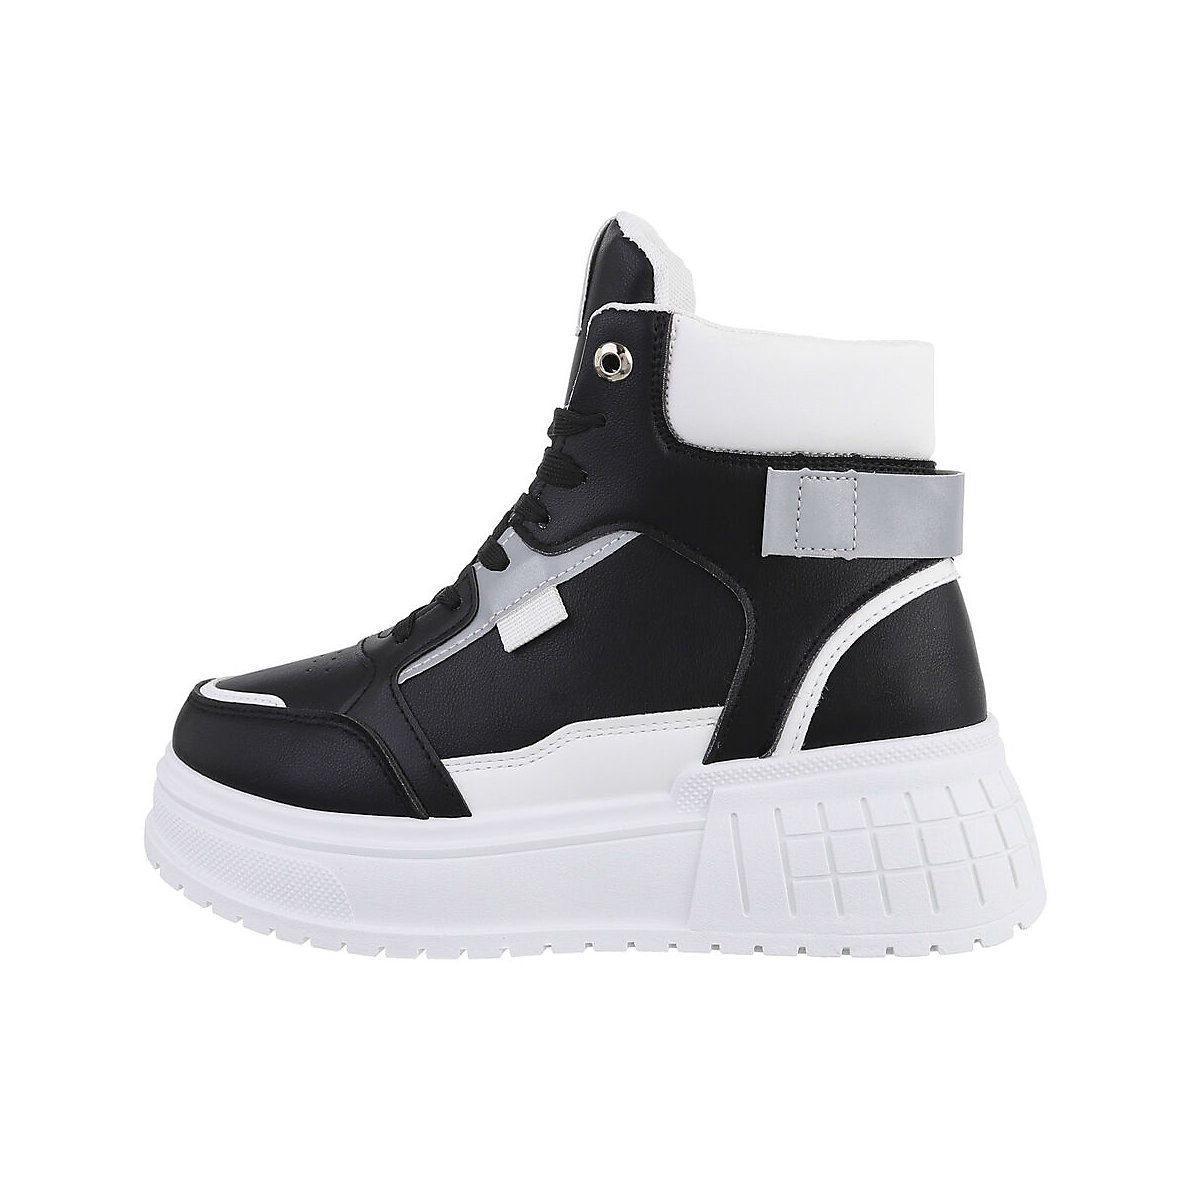 Ital-Design Sneakers High Lochschnürung Keilabsatz/Wedge schwarz/weiß